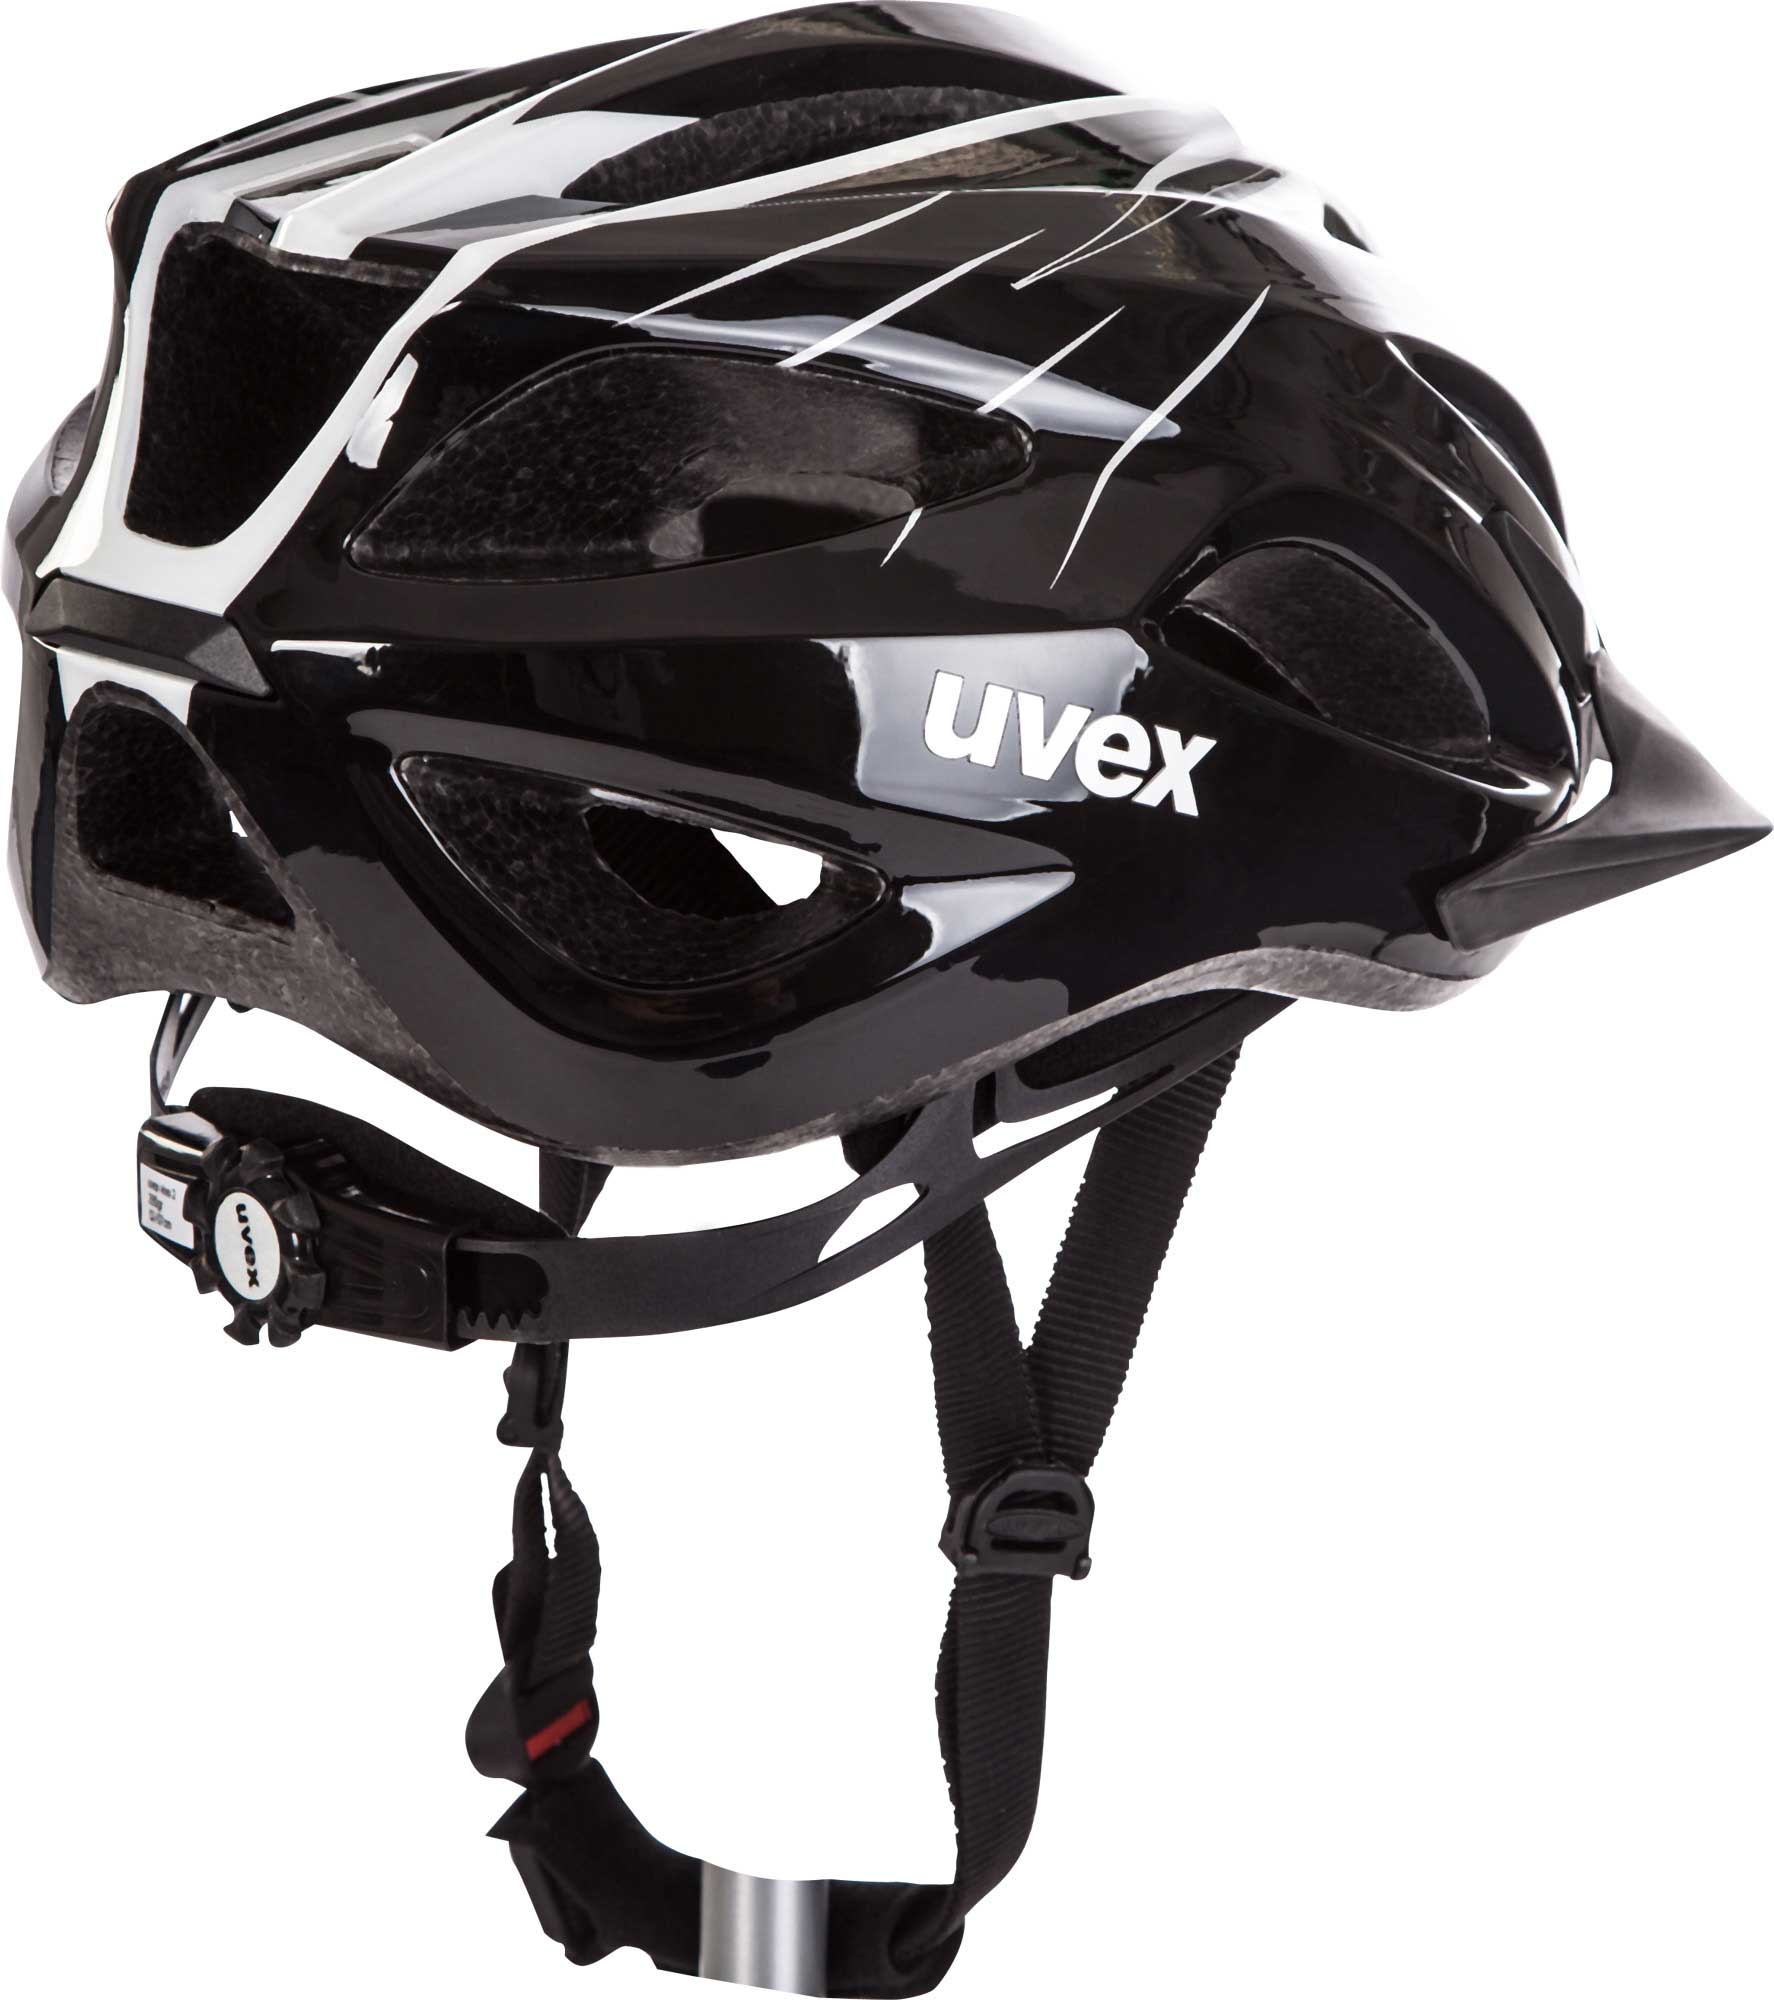 VIVA MEN - Cycling helmet